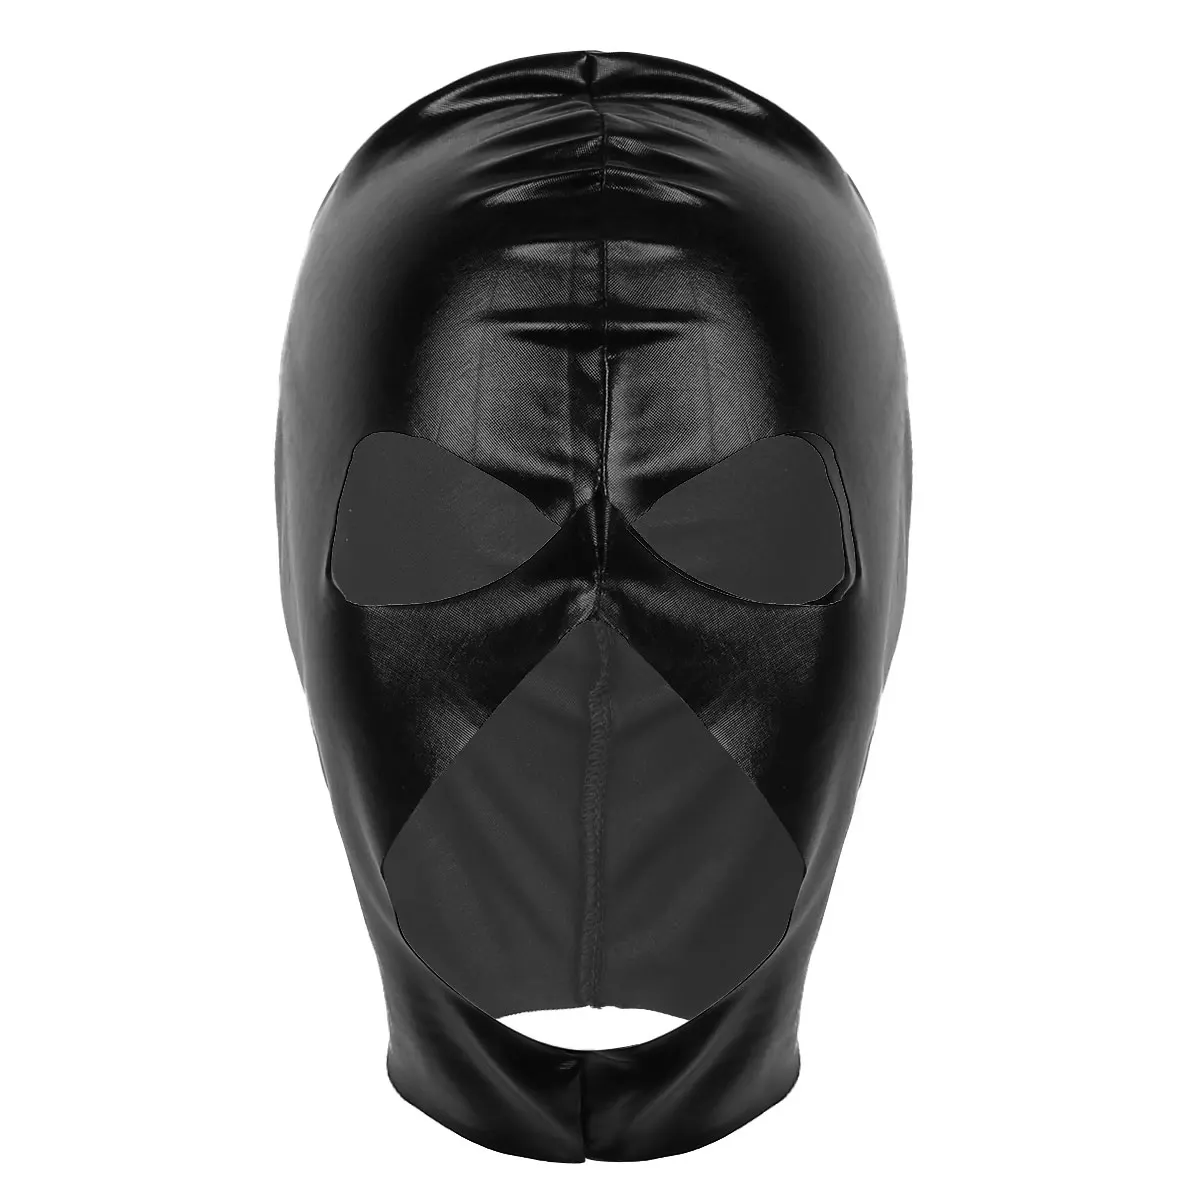 Мужские и взрослые черные лакированные кожаные маски открытые глаза нос и рот головной убор полная маска для лица капюшон для ролевых игр косплей костюм